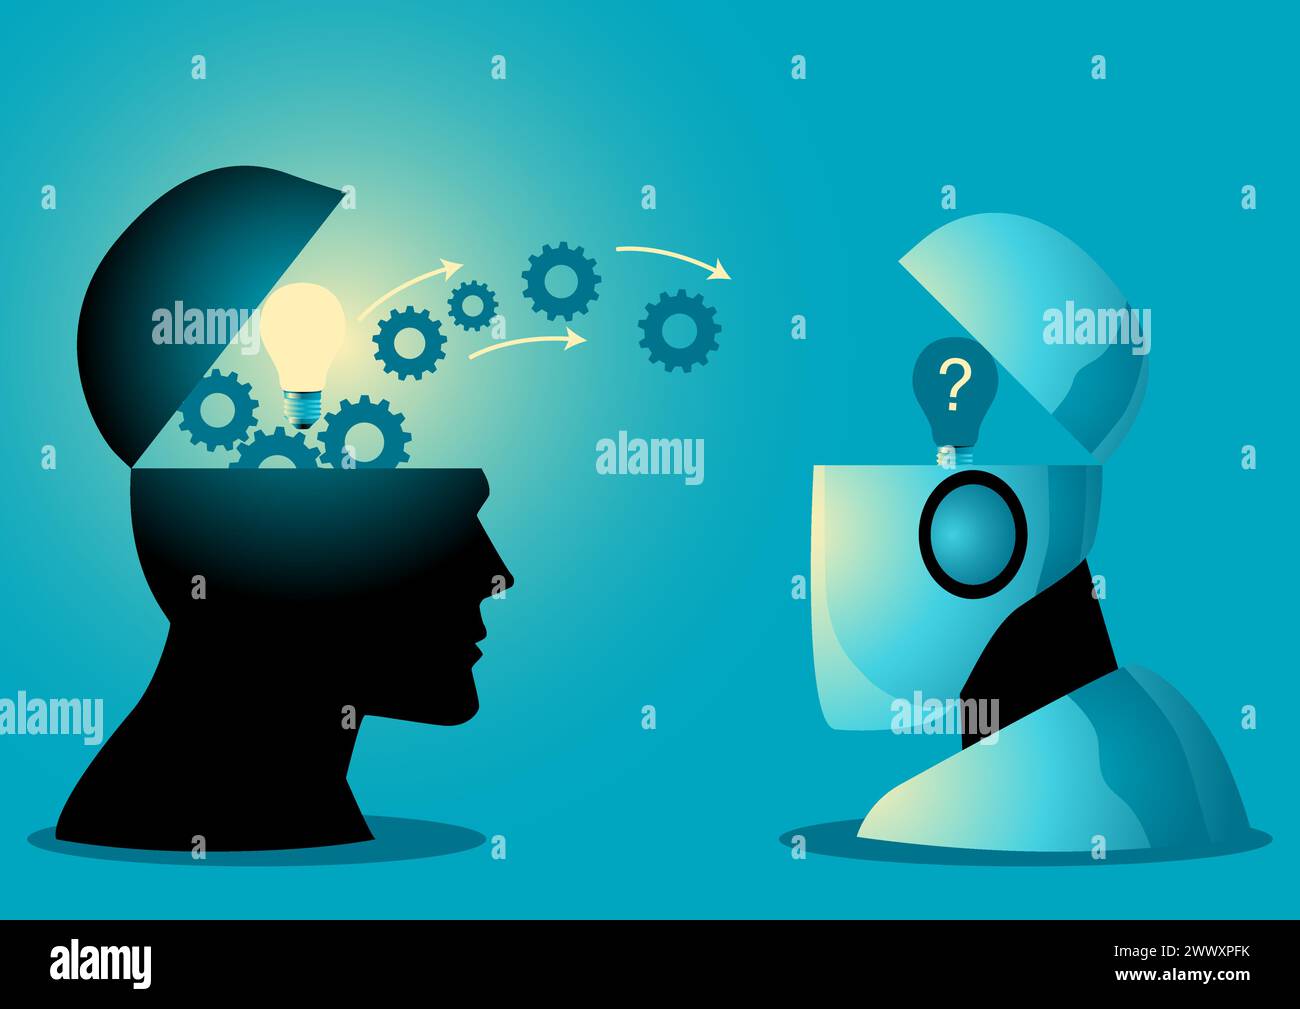 Représente symboliquement une tête humaine transférant des connaissances à un robot, concept d'apprentissage IA, illustration vectorielle Illustration de Vecteur